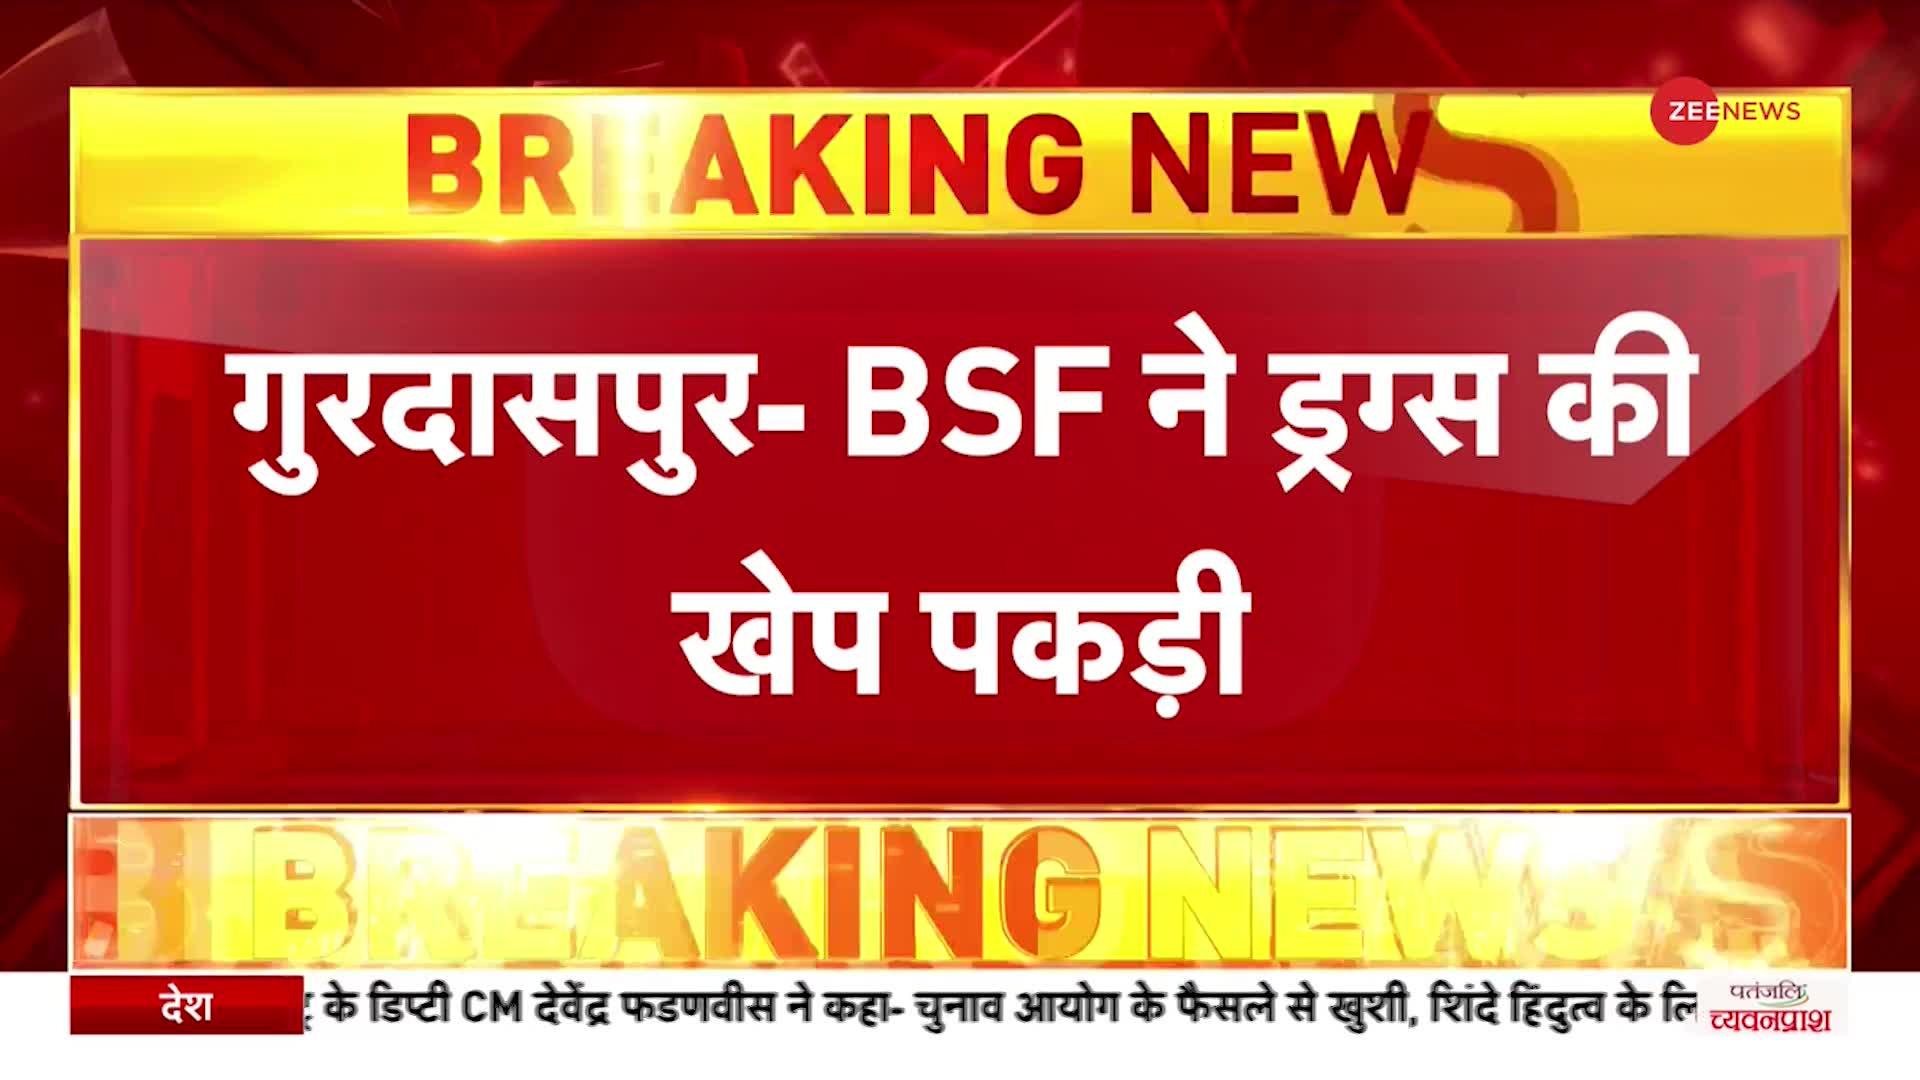 Breaking News: Punjab गुरदासपुर में BSF ने पकड़ी ड्रग्स की बड़ी खेप, 20 पैकेट हीरोइन दो पिस्टल बरामद